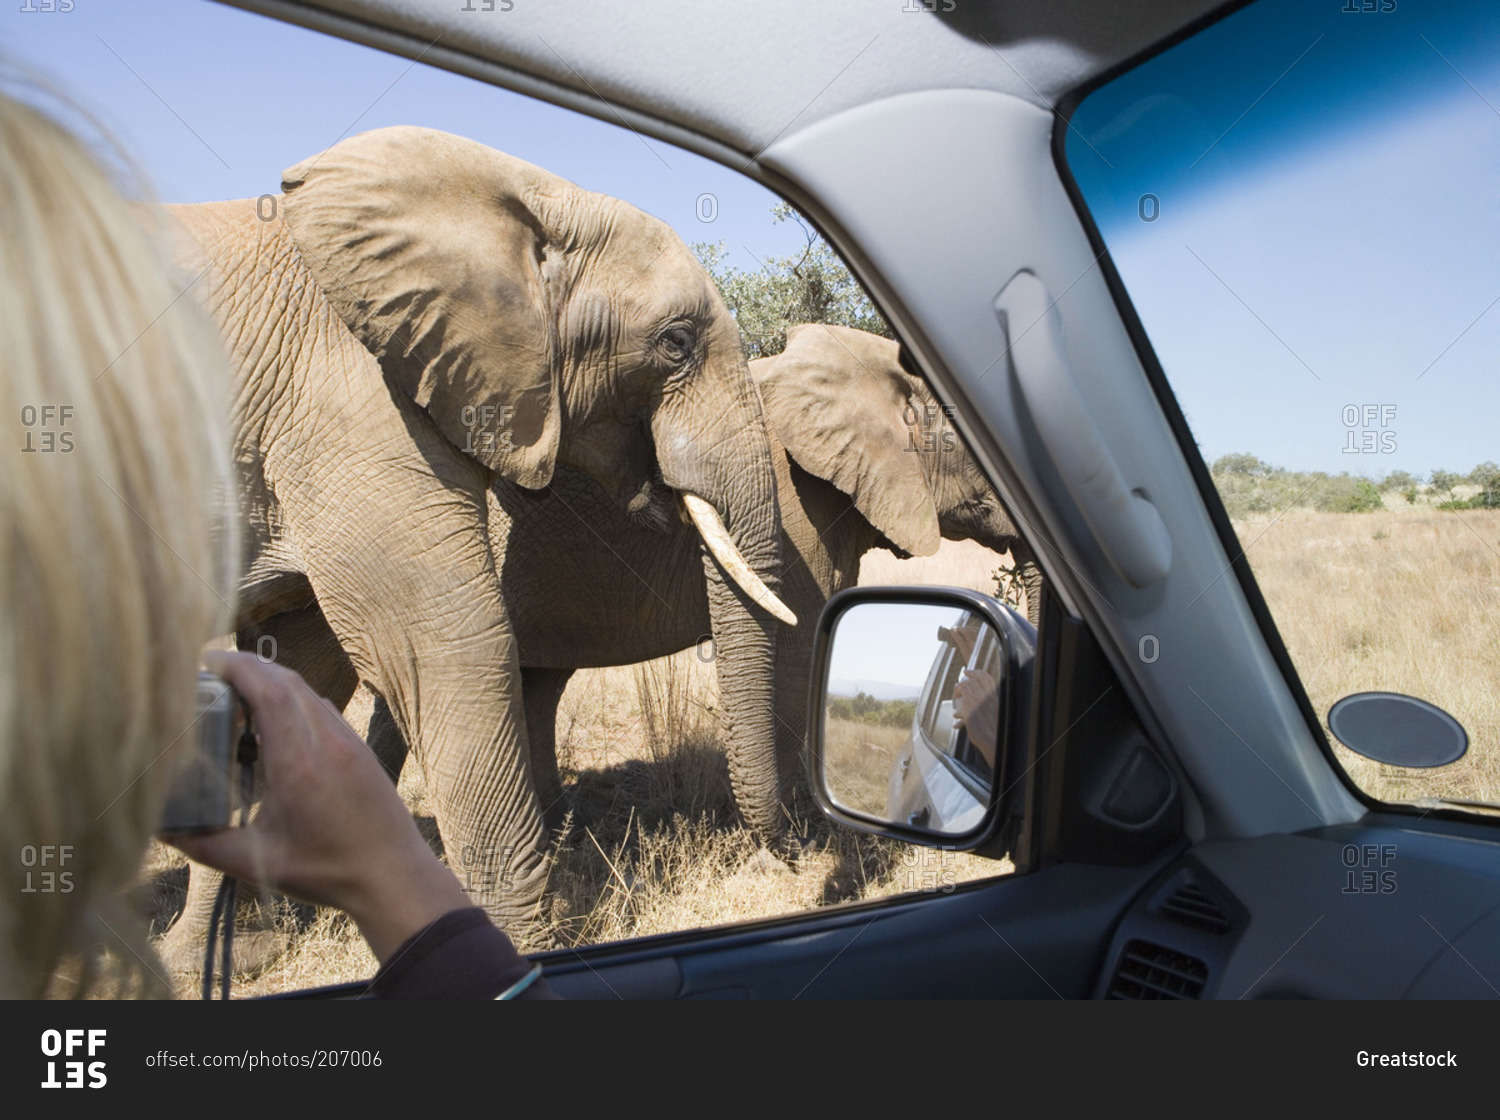 Woman photographing elephants on a safari